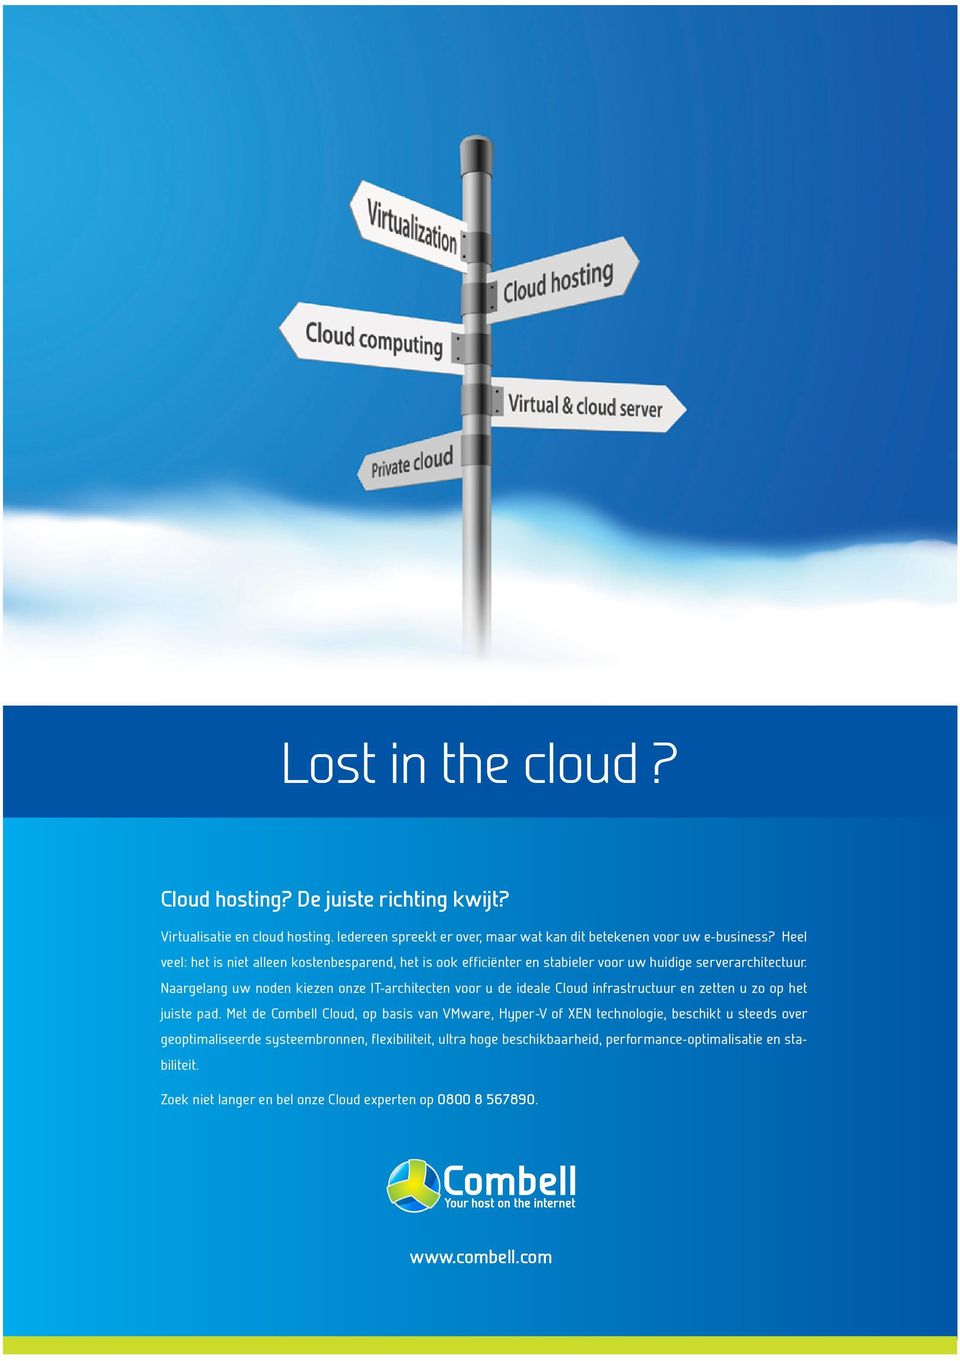 Naargelang uw noden kiezen onze IT-architecten voor u de ideale Cloud infrastructuur en zetten u zo op het juiste pad.